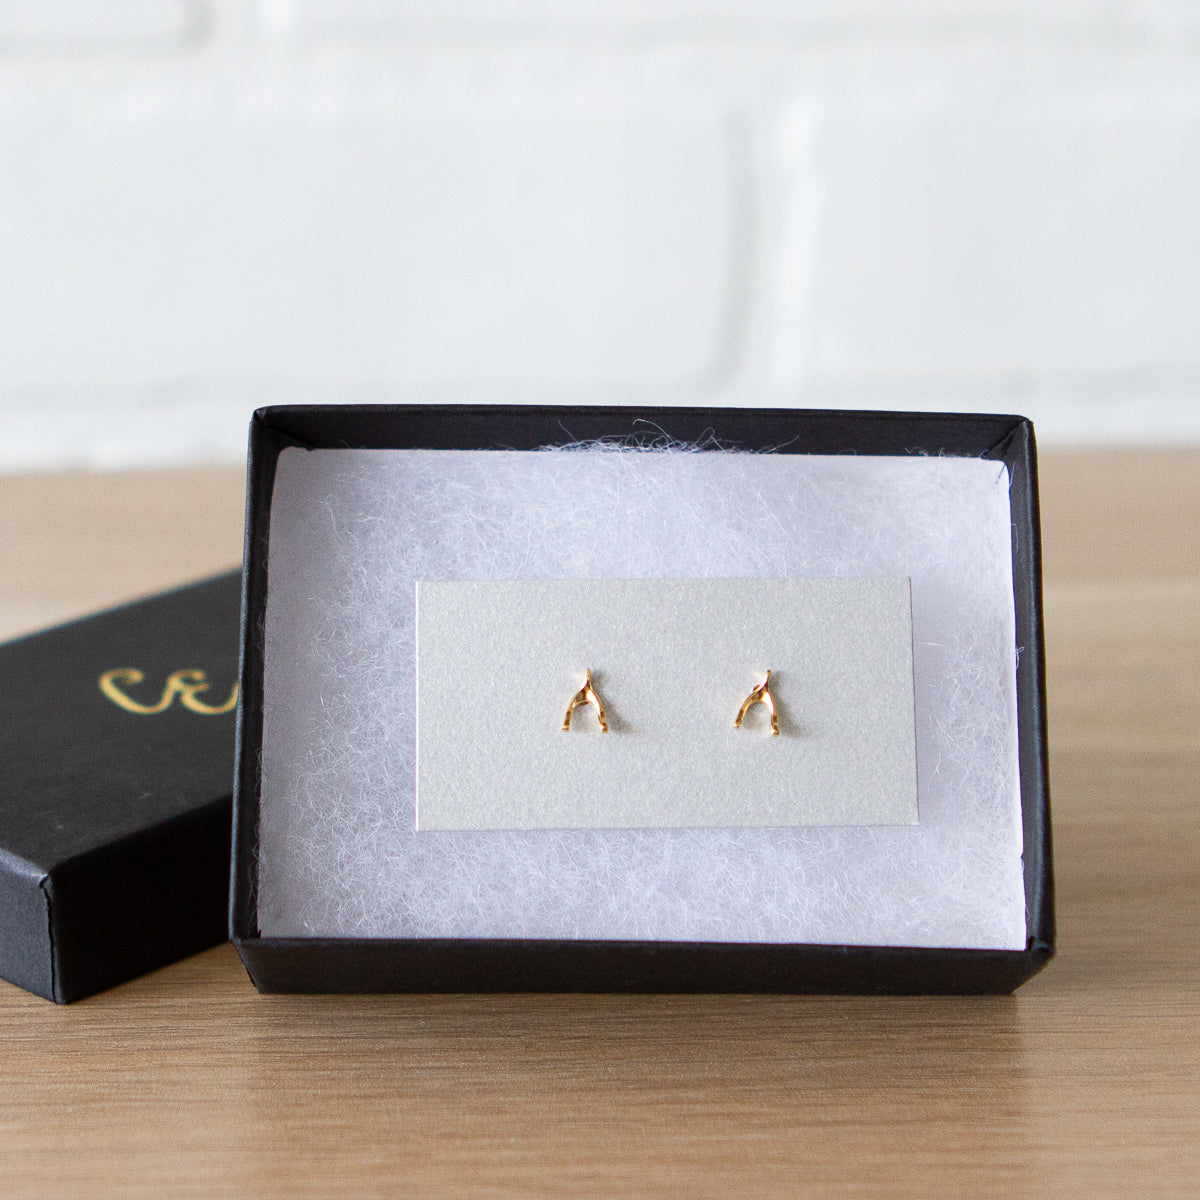 Vermeil Wishbone Stud Earrings by Corey Egan in a gift box